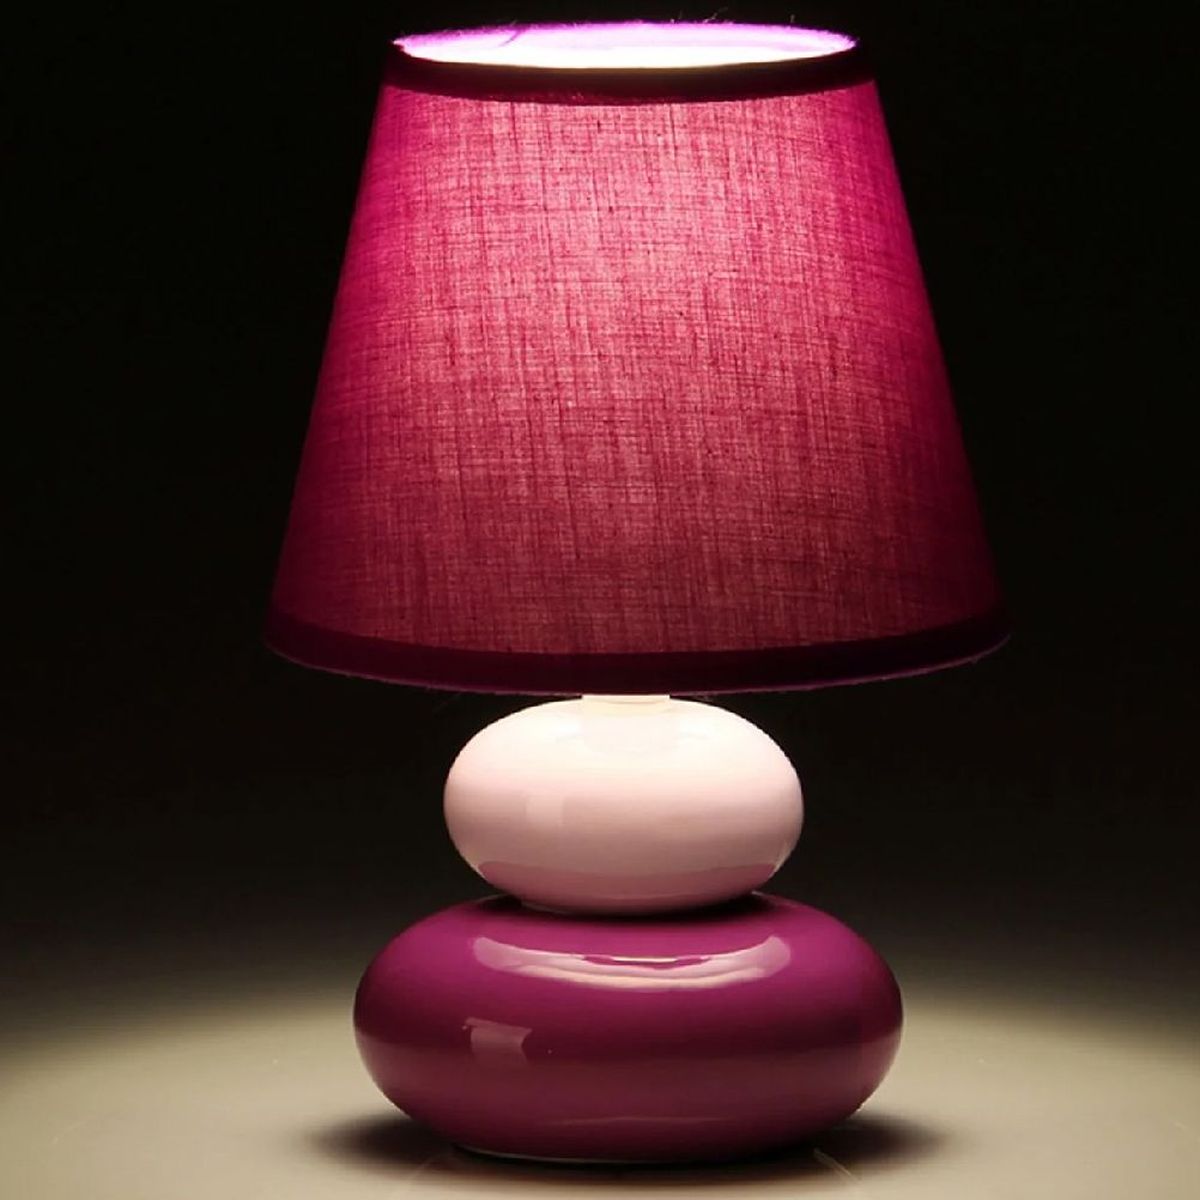 Ceramic lamp 22 cm